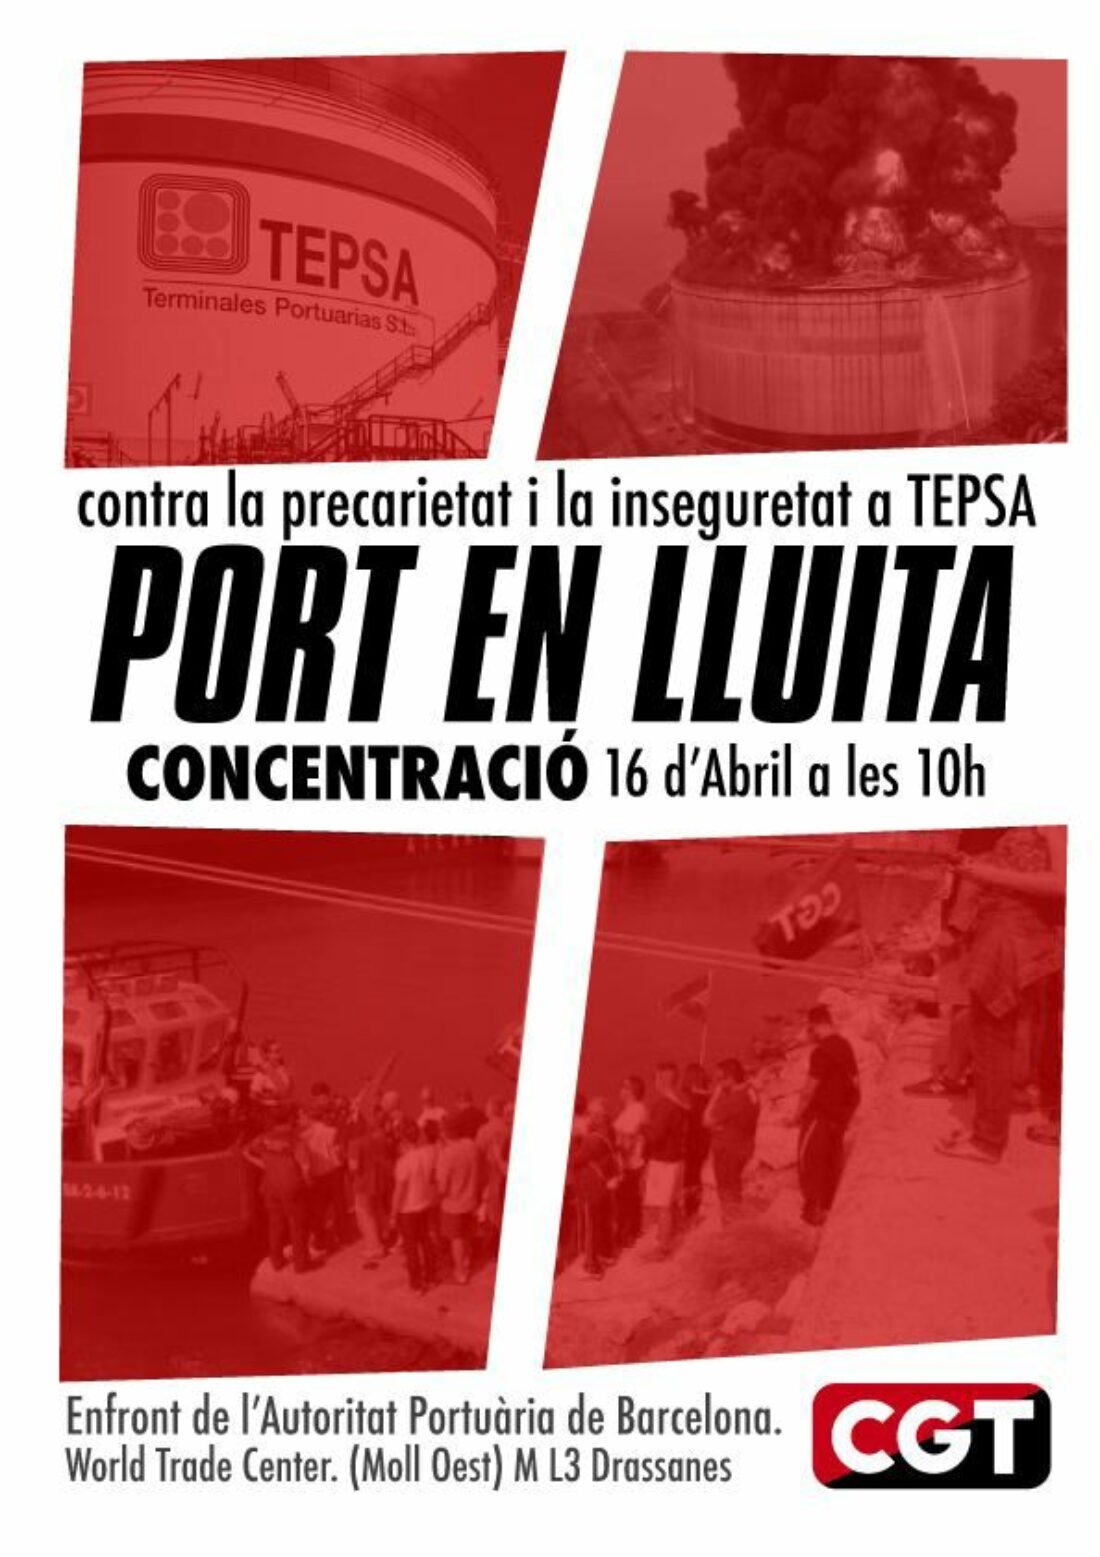 CGT Tepsa convoca acciones sindicales para el 16 de abril contra la inseguridad laboral y la represión sindical en el Puerto de Barcelona